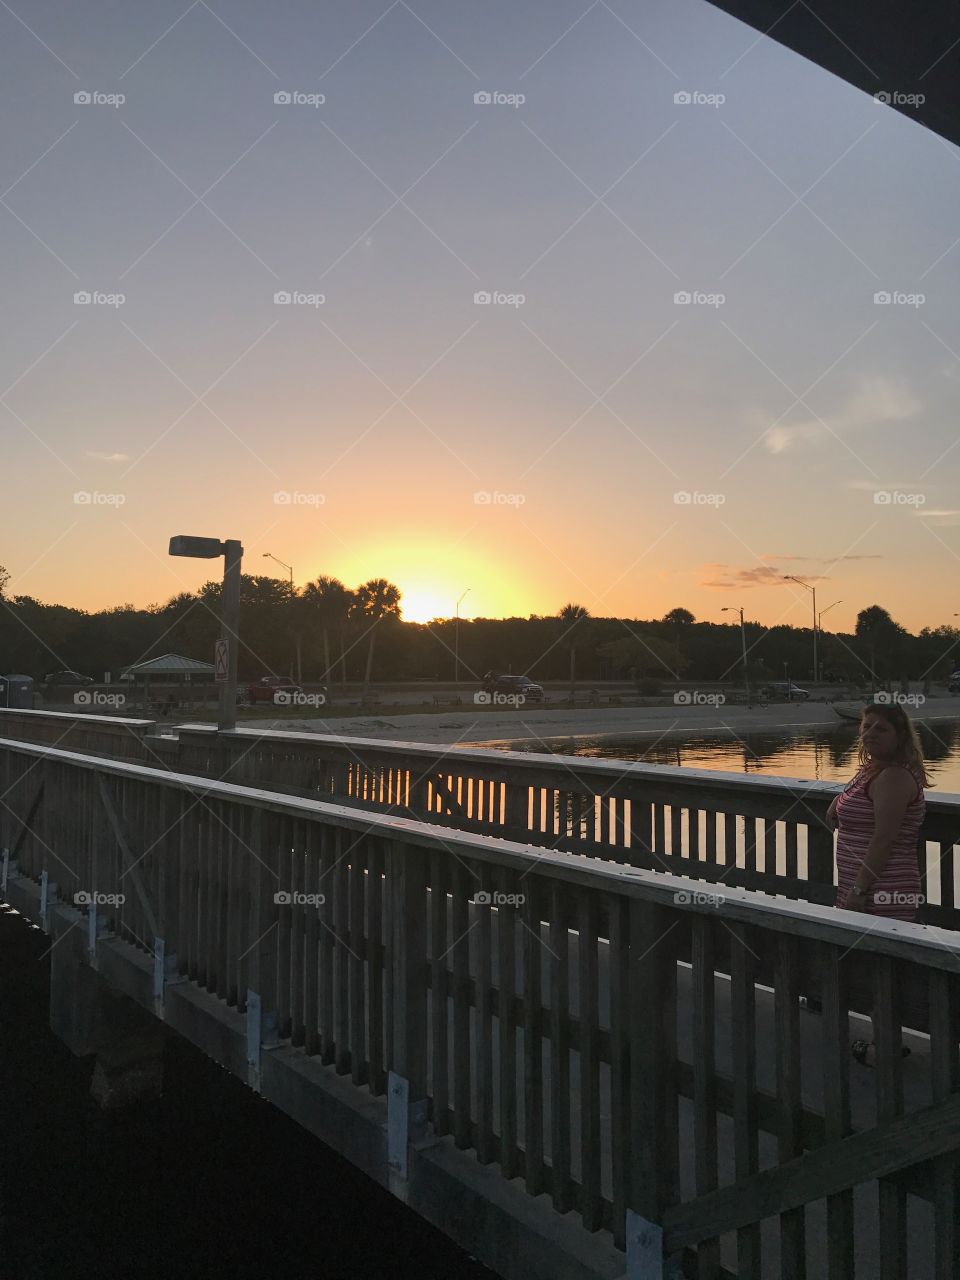 Bridge and sunset beach 